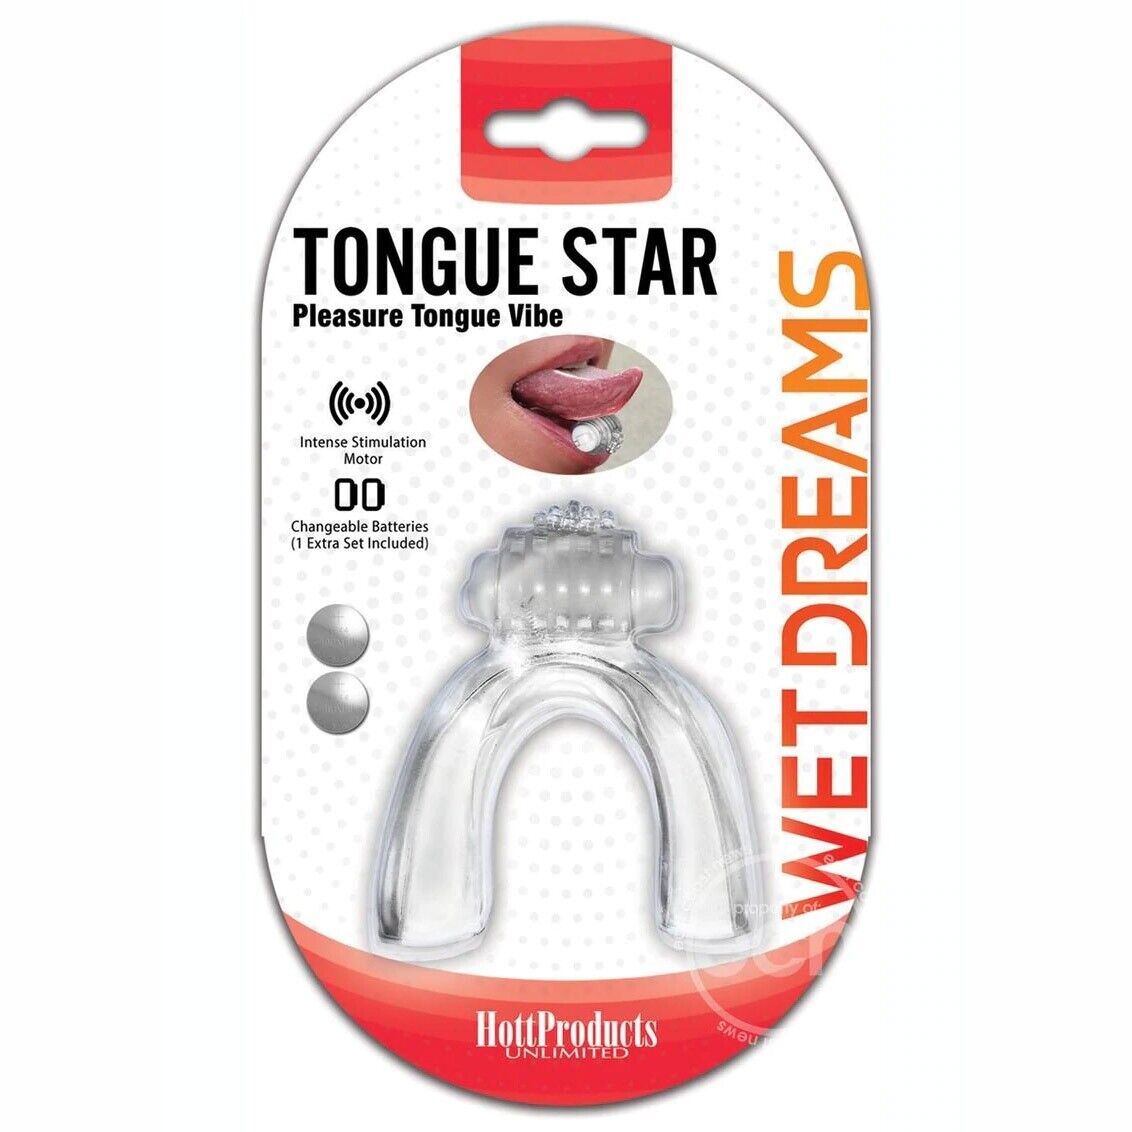 Wet Dreams Tongue Star Pleasure Tongue Vibe Oral Sex Vibrator